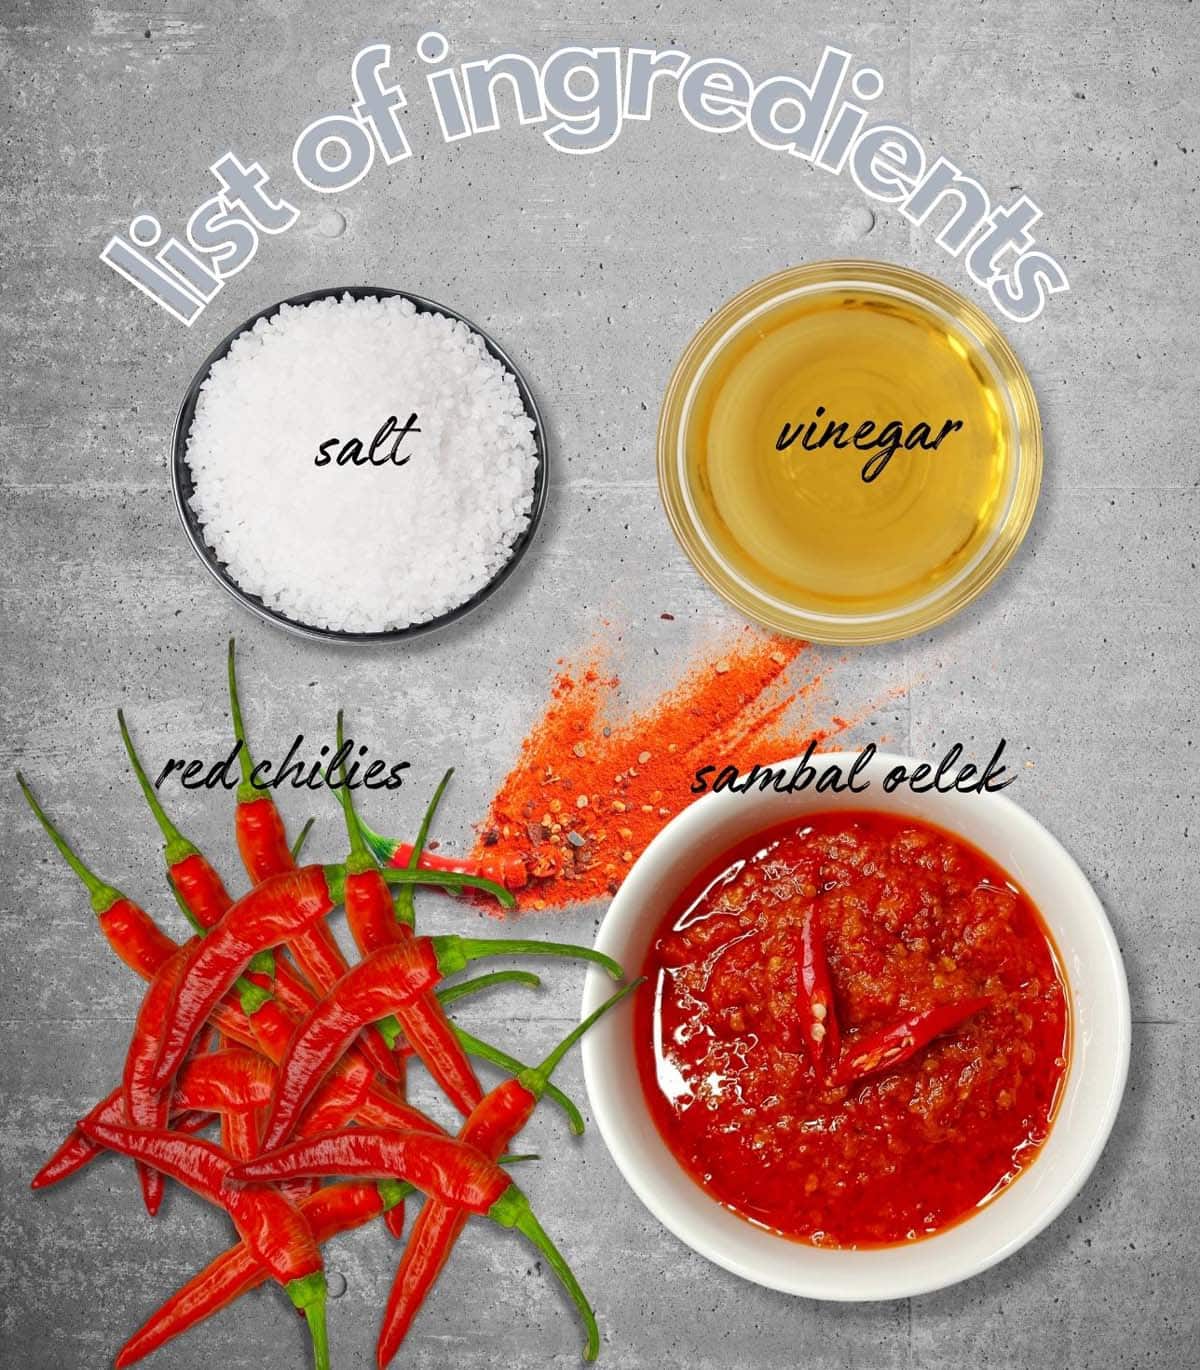 Basic ingredients for Sambal Oelek.